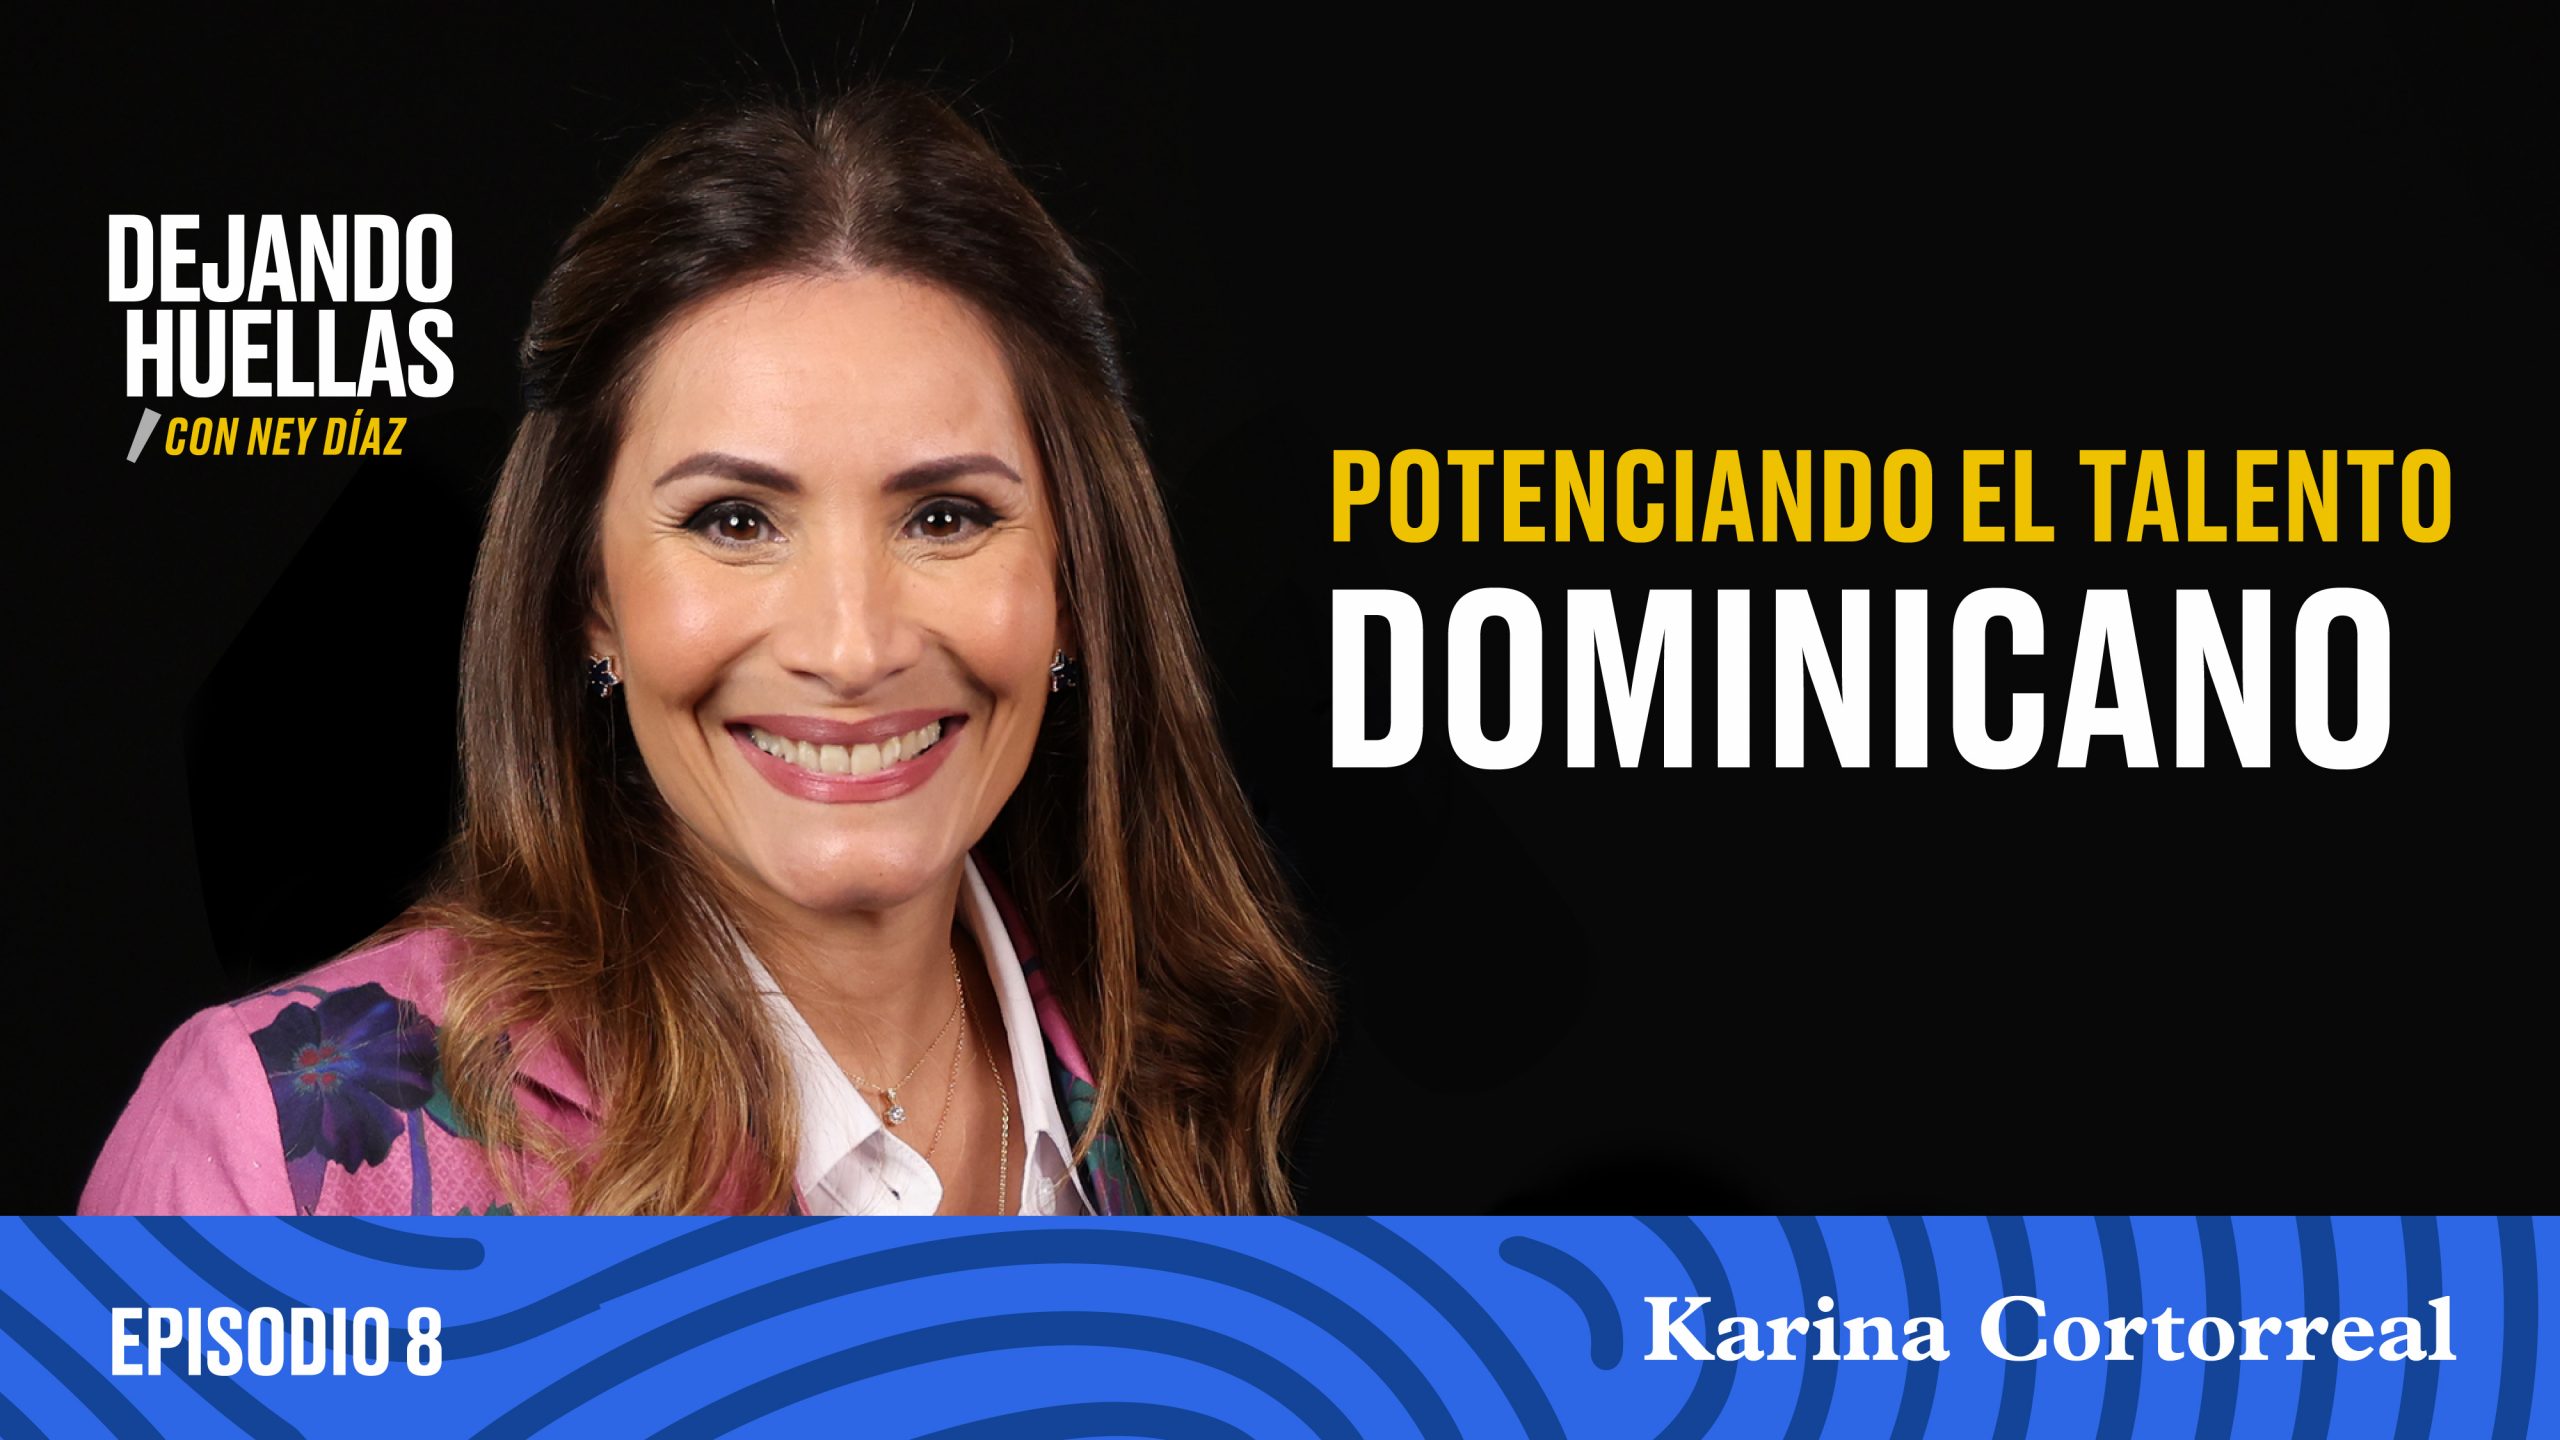 Episodio #8 - Karina Cortorreal: Potenciando el talento dominicano [T1]